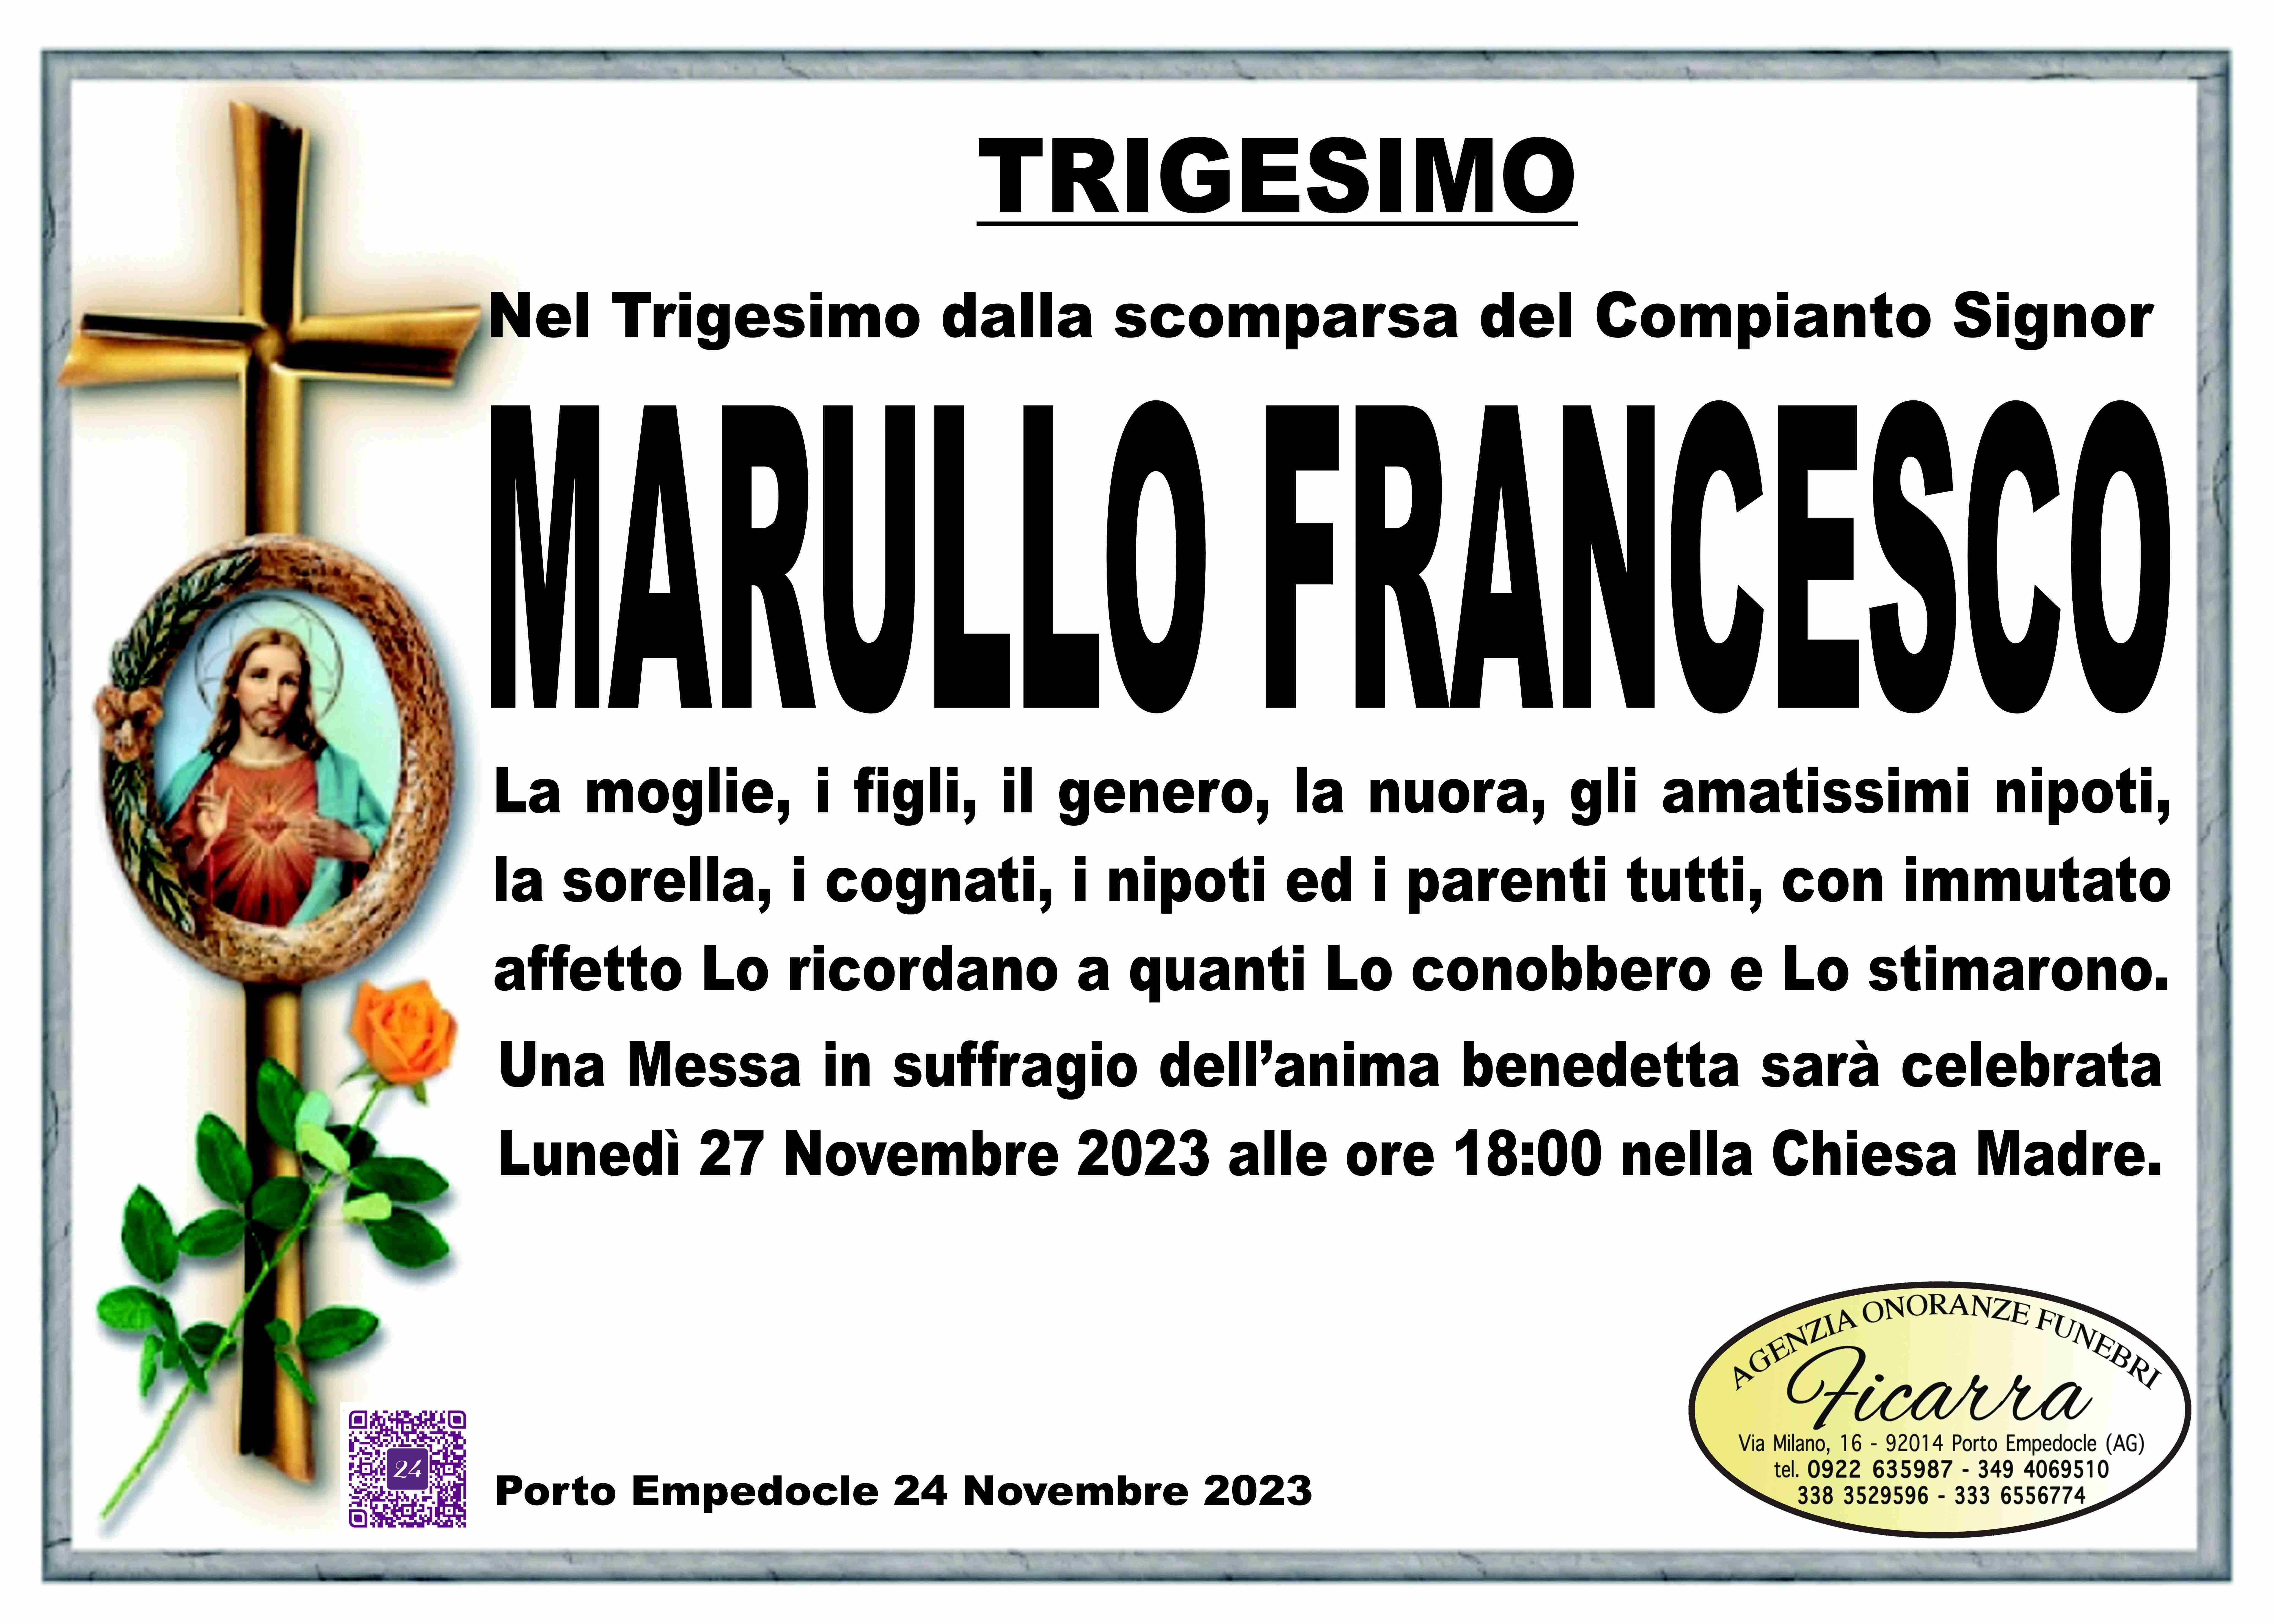 Francesco Marullo